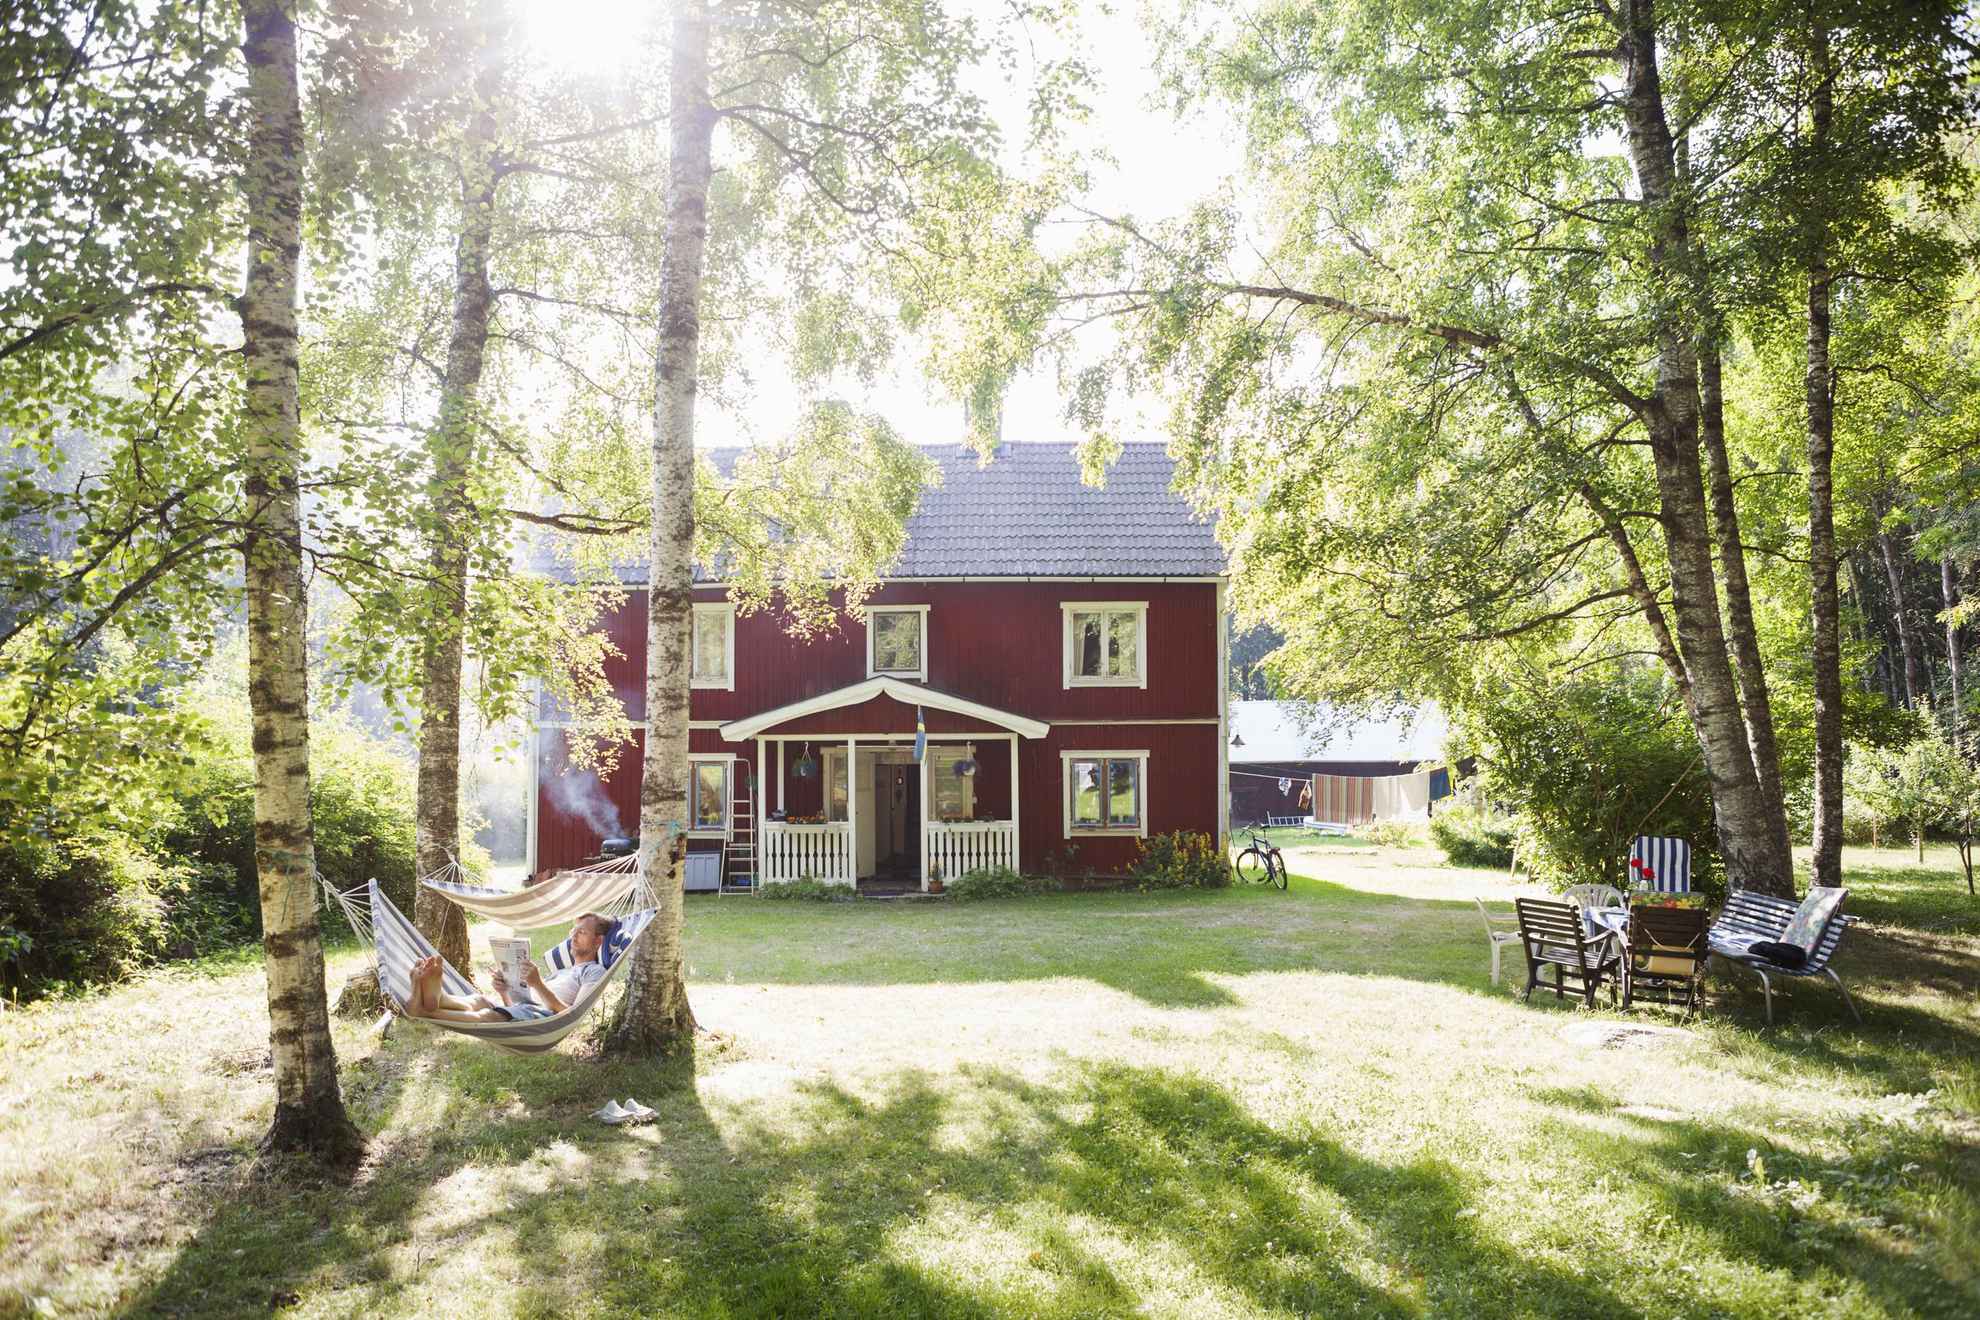 Een tuin voor een traditioneel rood Zweeds huis, met groen, bomen, hangmatten en tuinmeubelen.